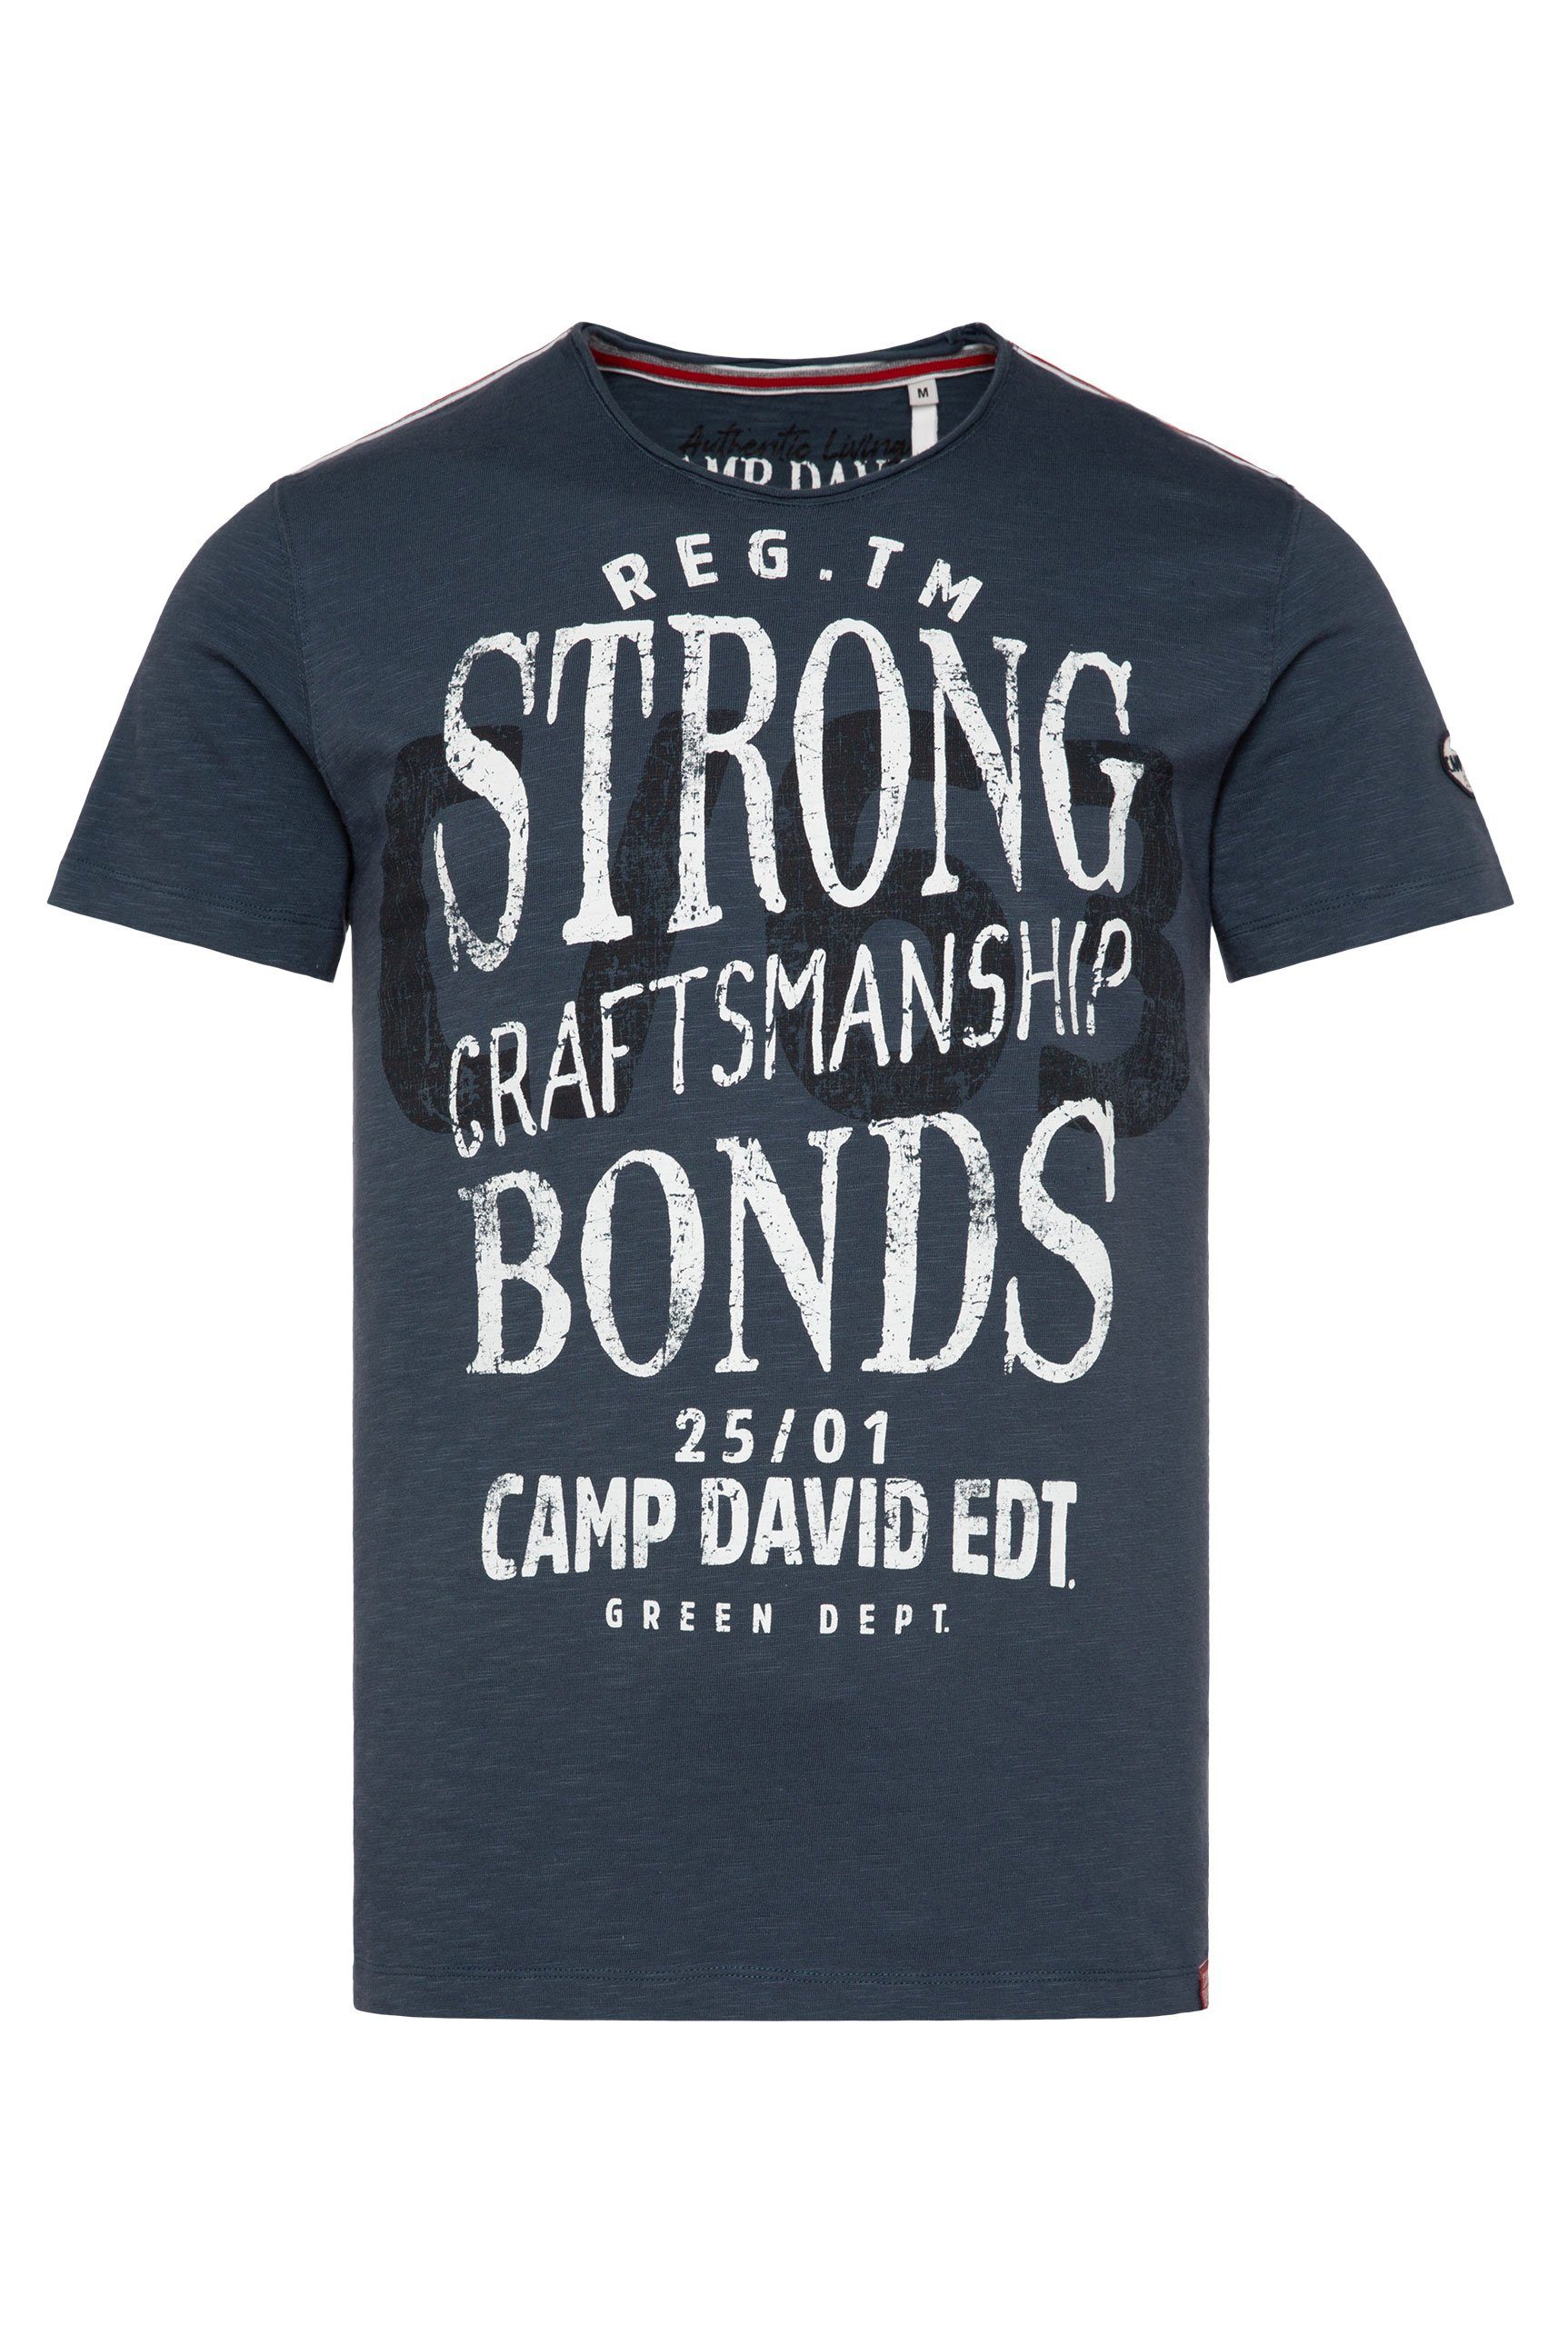 DAVID und hinten CAMP T-Shirt vorne teal mit dark Logoprints